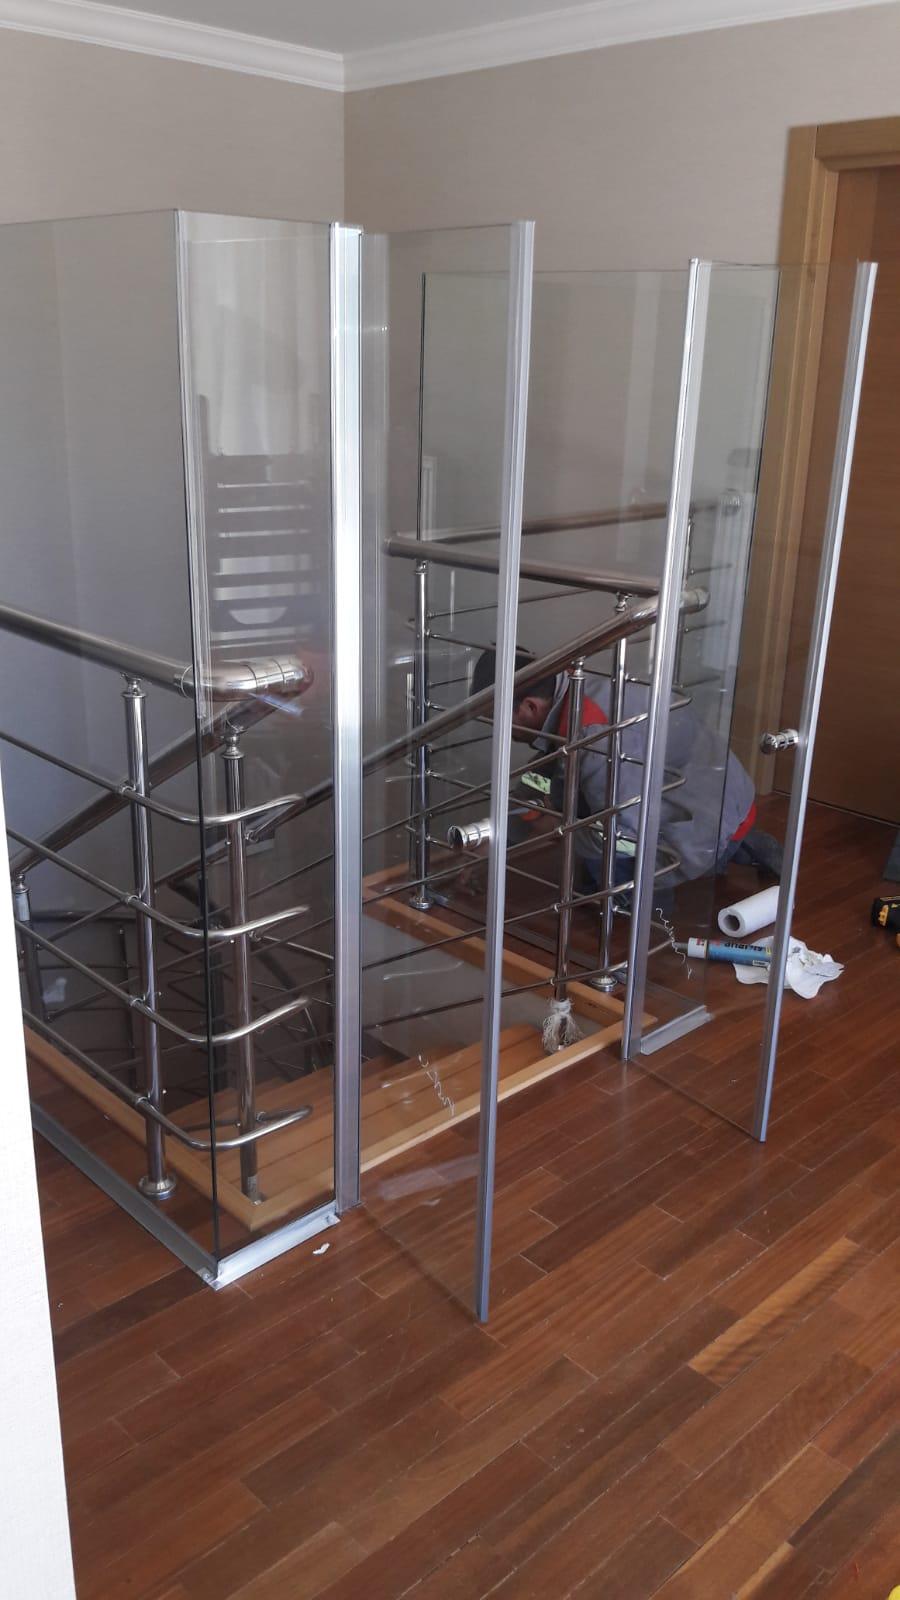 Efor Cam & Ayna - Merdiven Kenarı Cam İşlerimiz